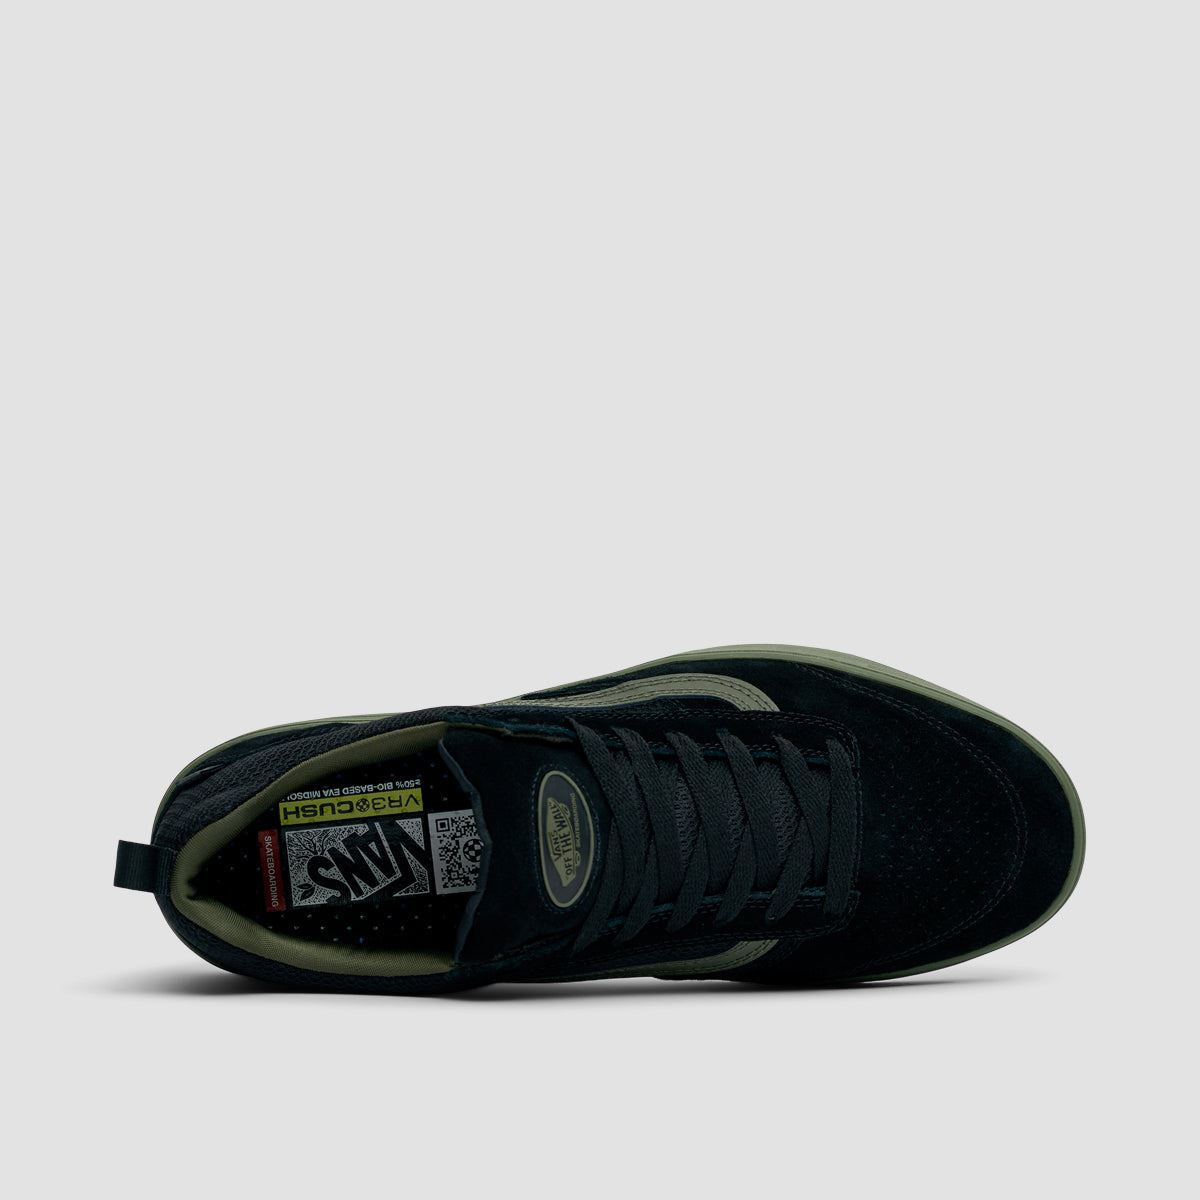 Vans Zahba Shoes - Fatigue/Black